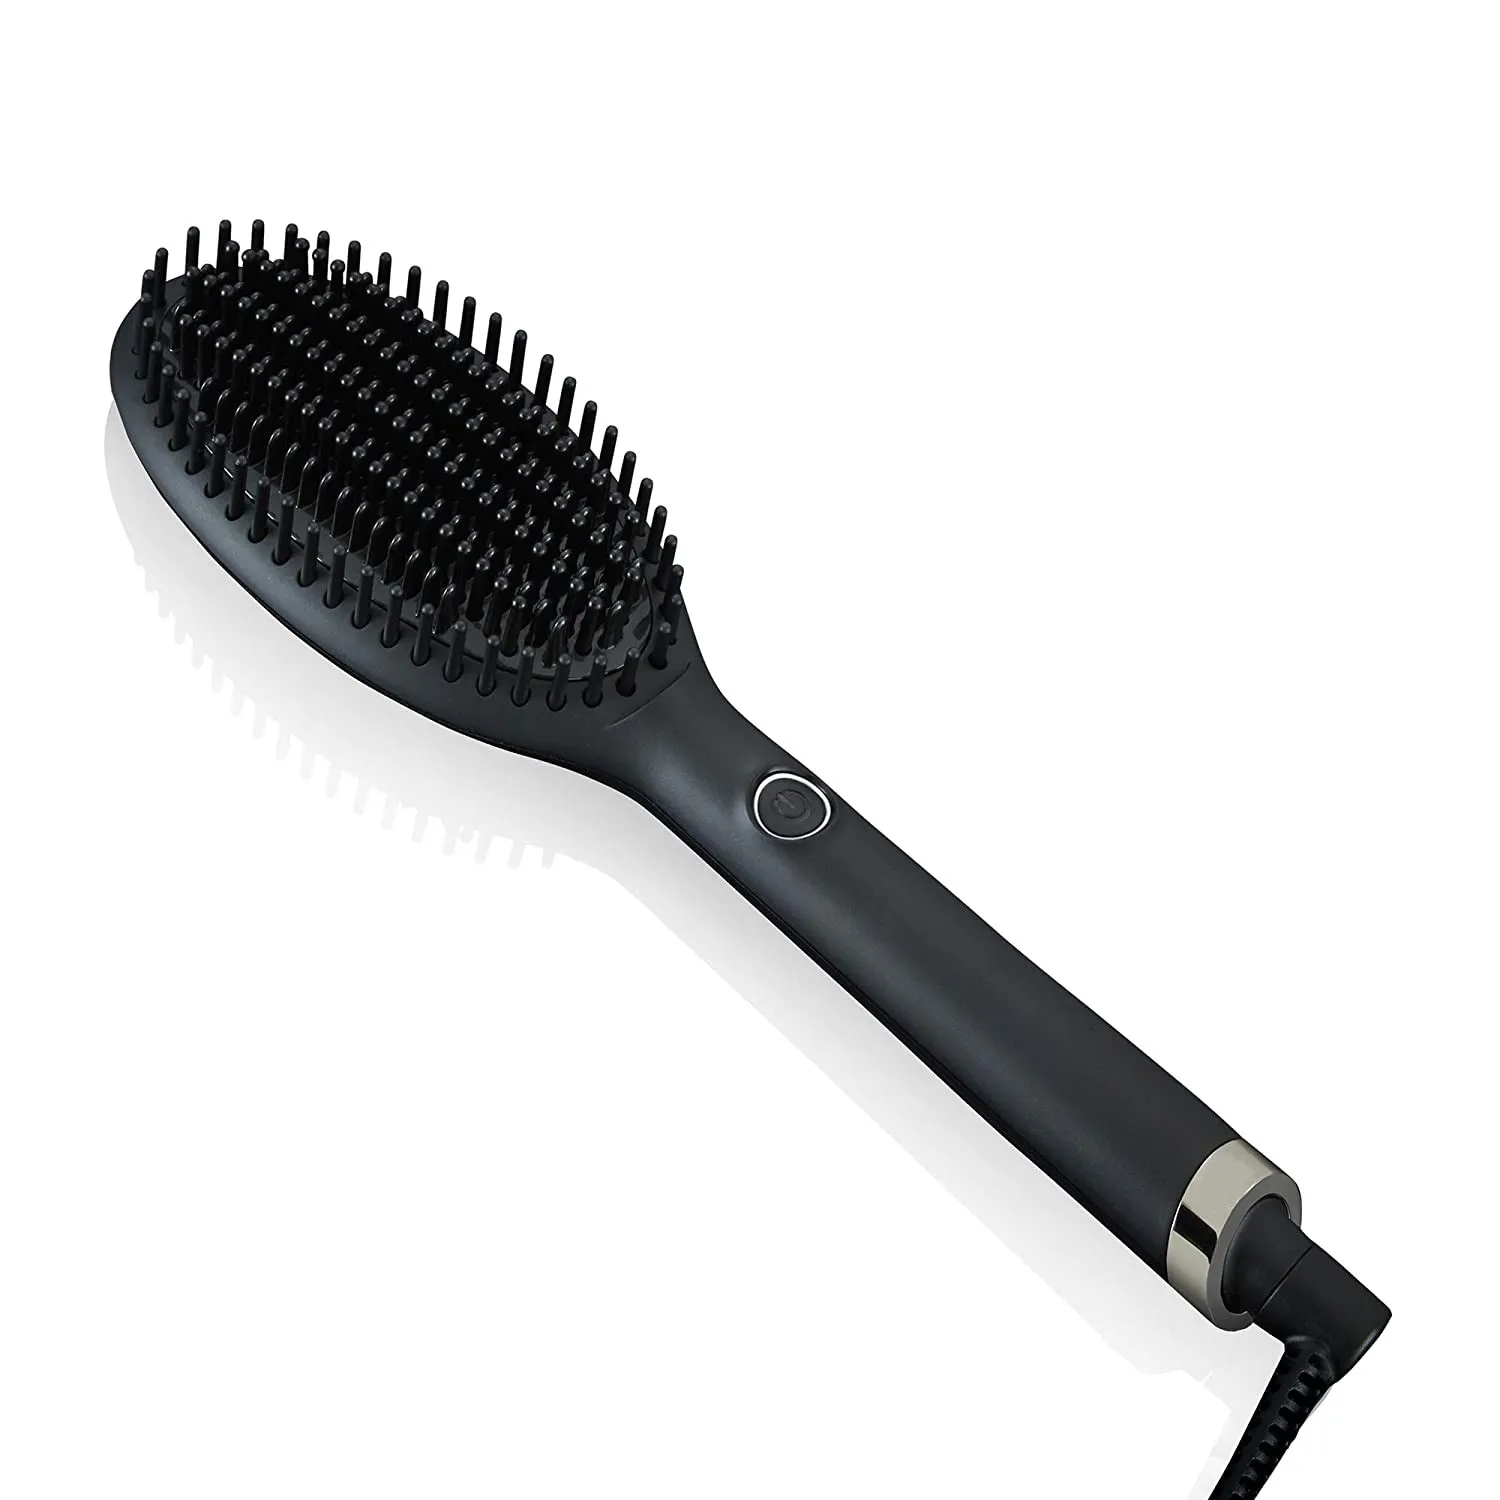 Brand Glide profesional cepillo caliente alisador de cabello cepillo secador Styler peine multifuncional